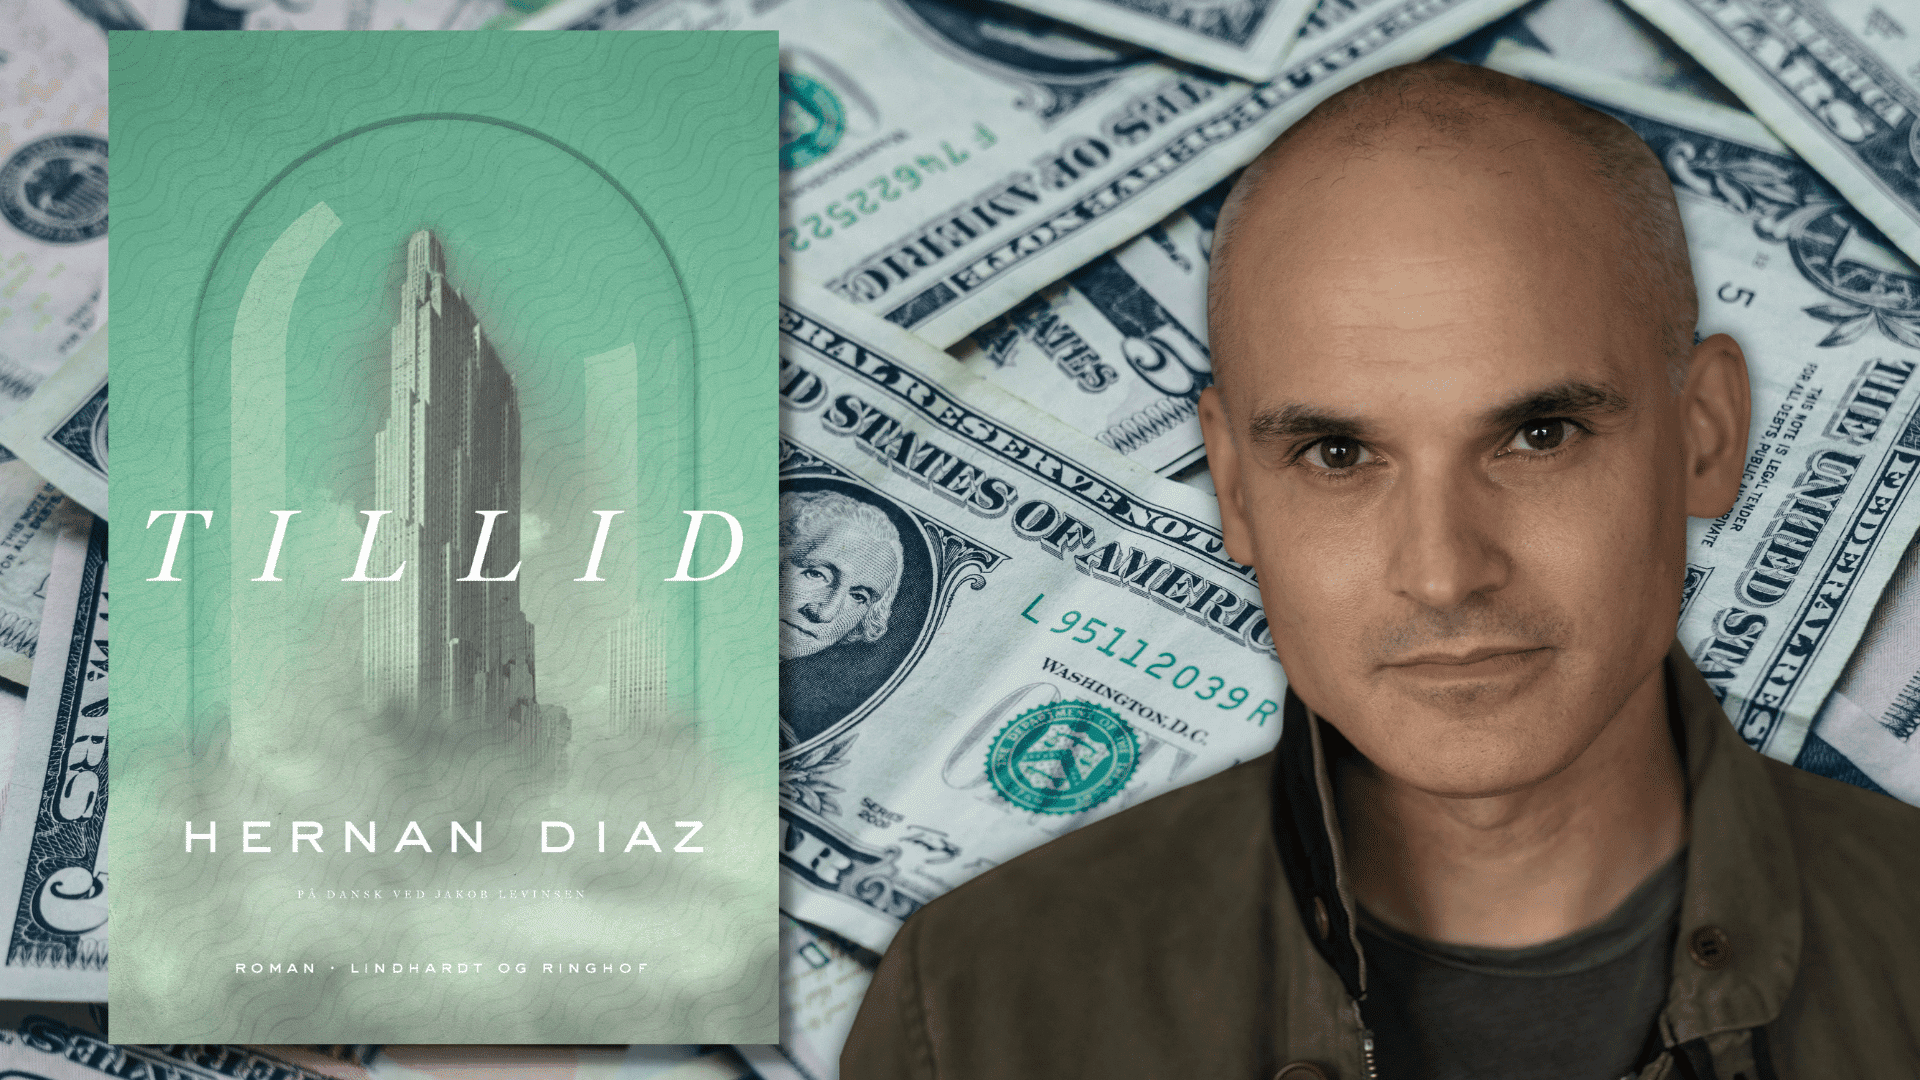 Kom bag om Pulitzerpris-romanen Tillid fra supertalentet Hernan Diaz BOG.DK